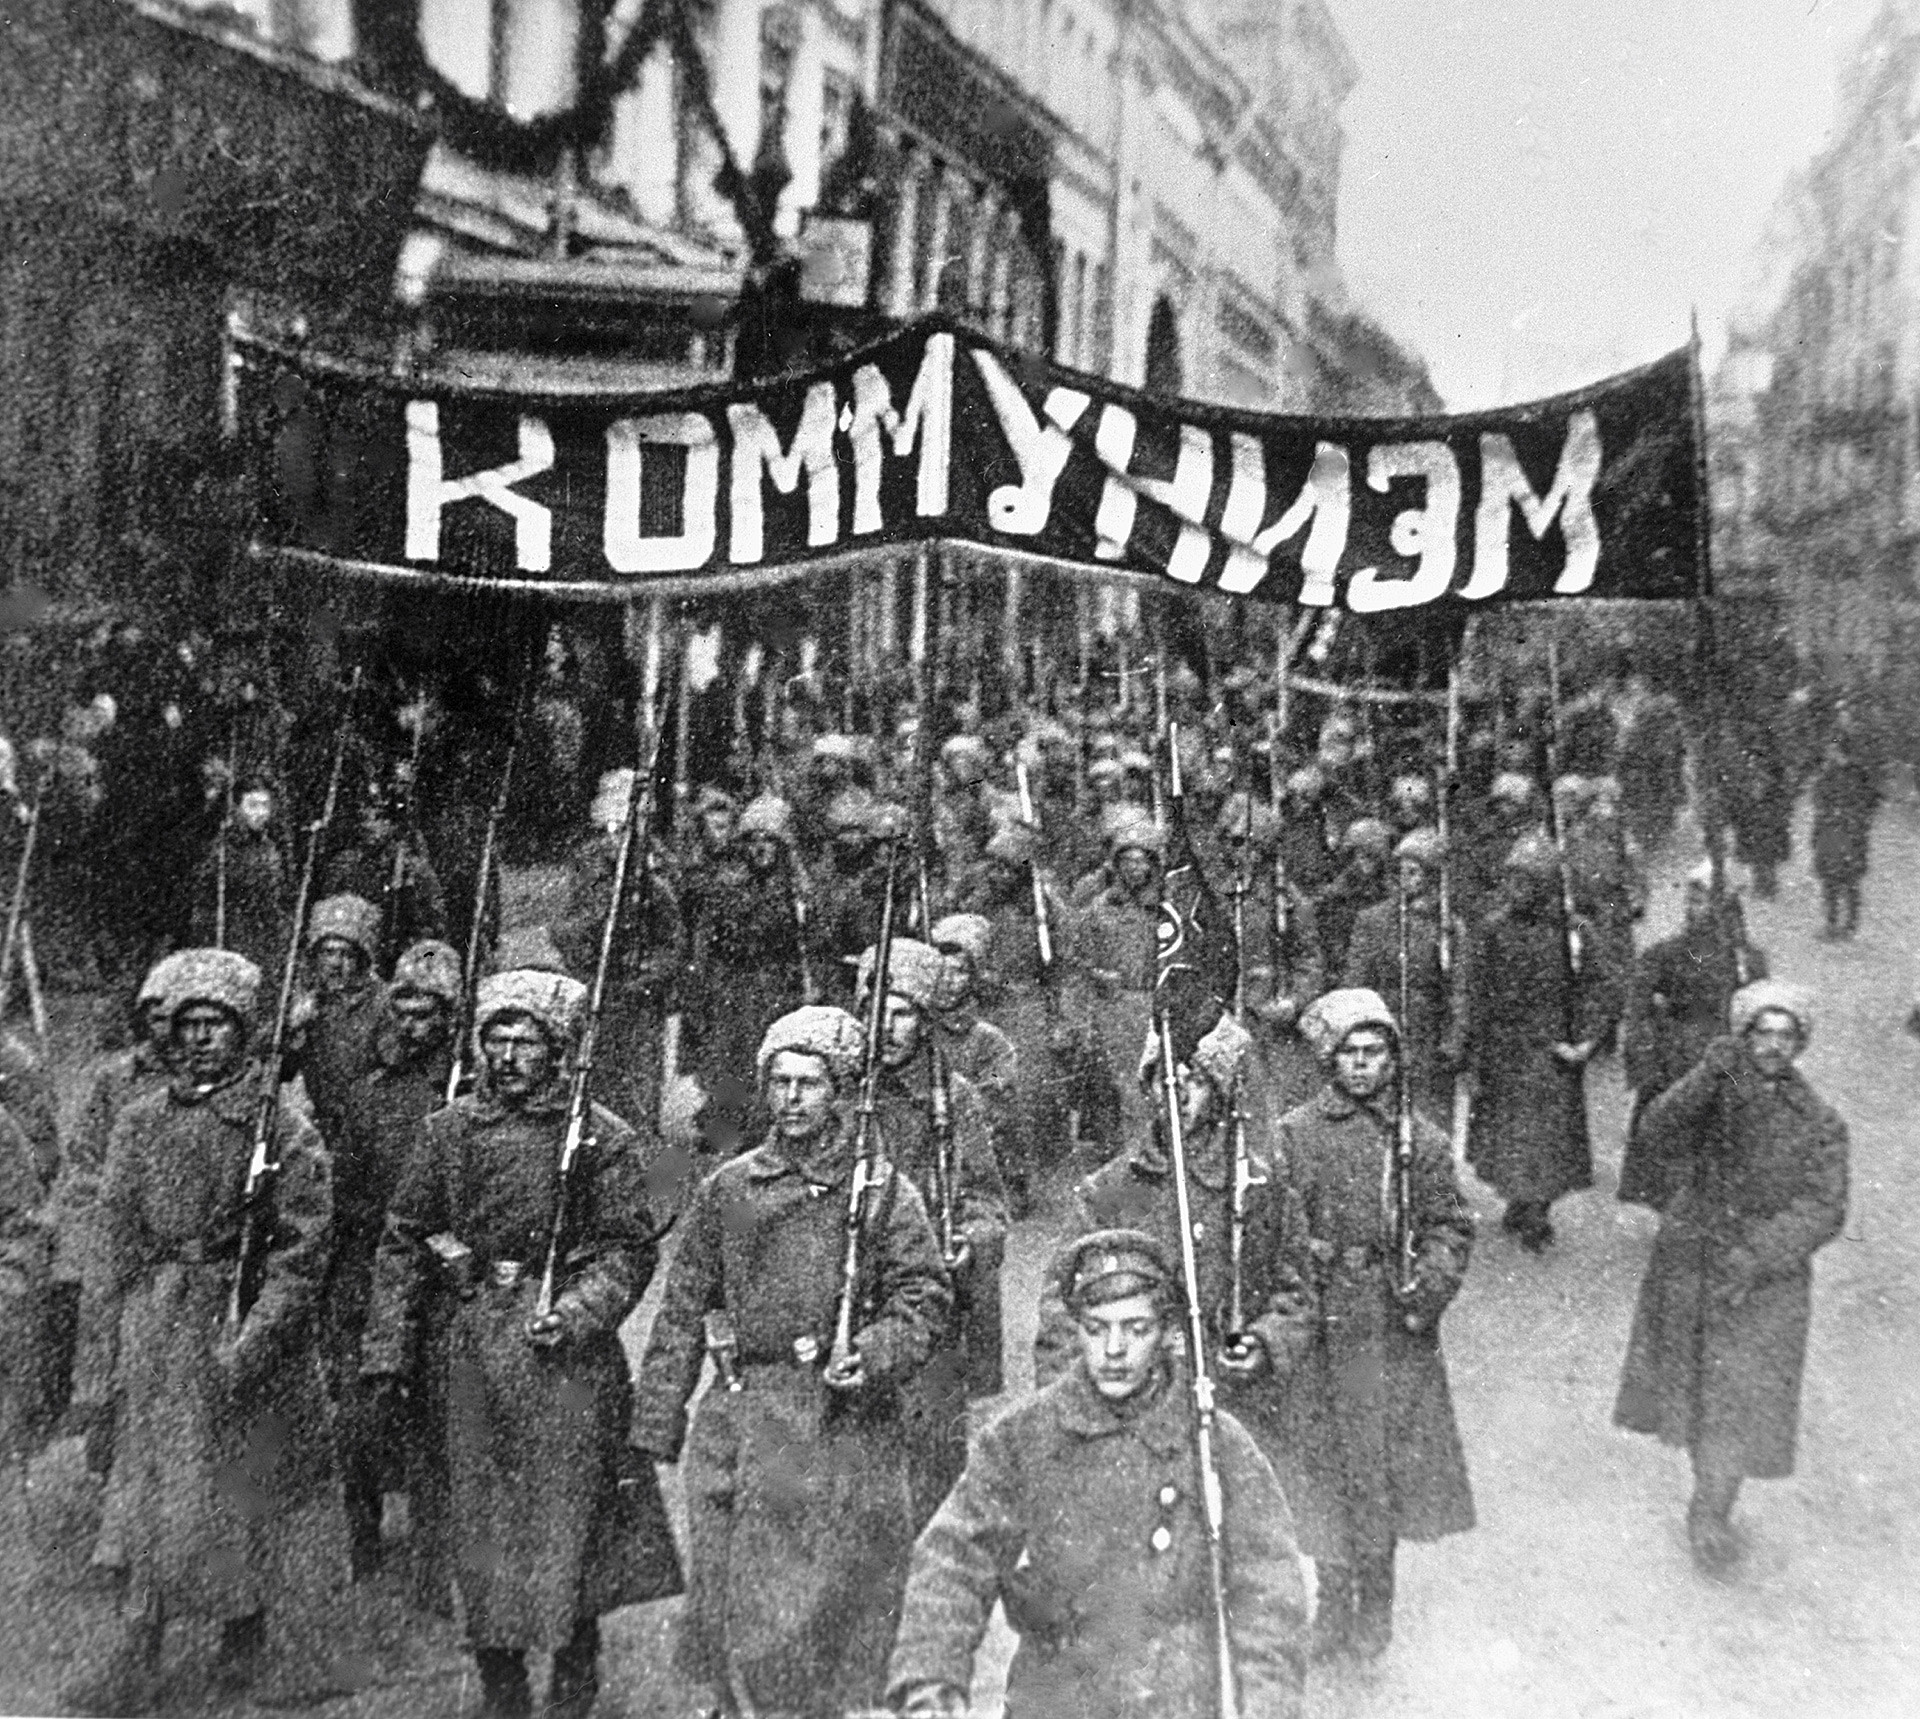 The Bolsheviks on Nikolskaya, 1917. The poster reads 